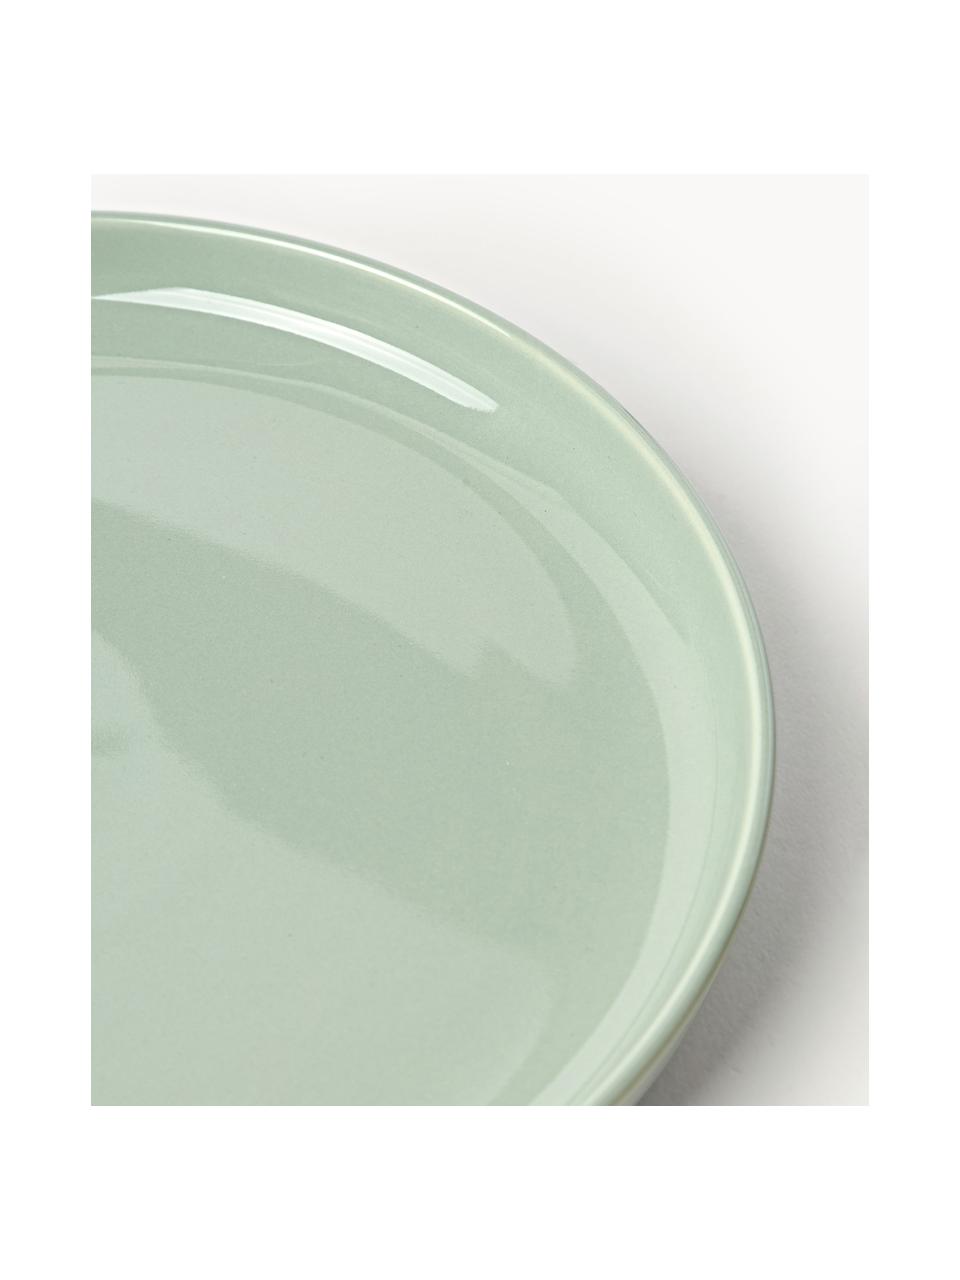 Sada porcelánového nádobí Nessa, pro 4 osoby (12 dílů), Vysoce kvalitní tvrdý porcelán, glazovaný, Šalvějově zelená, lesklá, Pro 4 osoby (12 dílů)